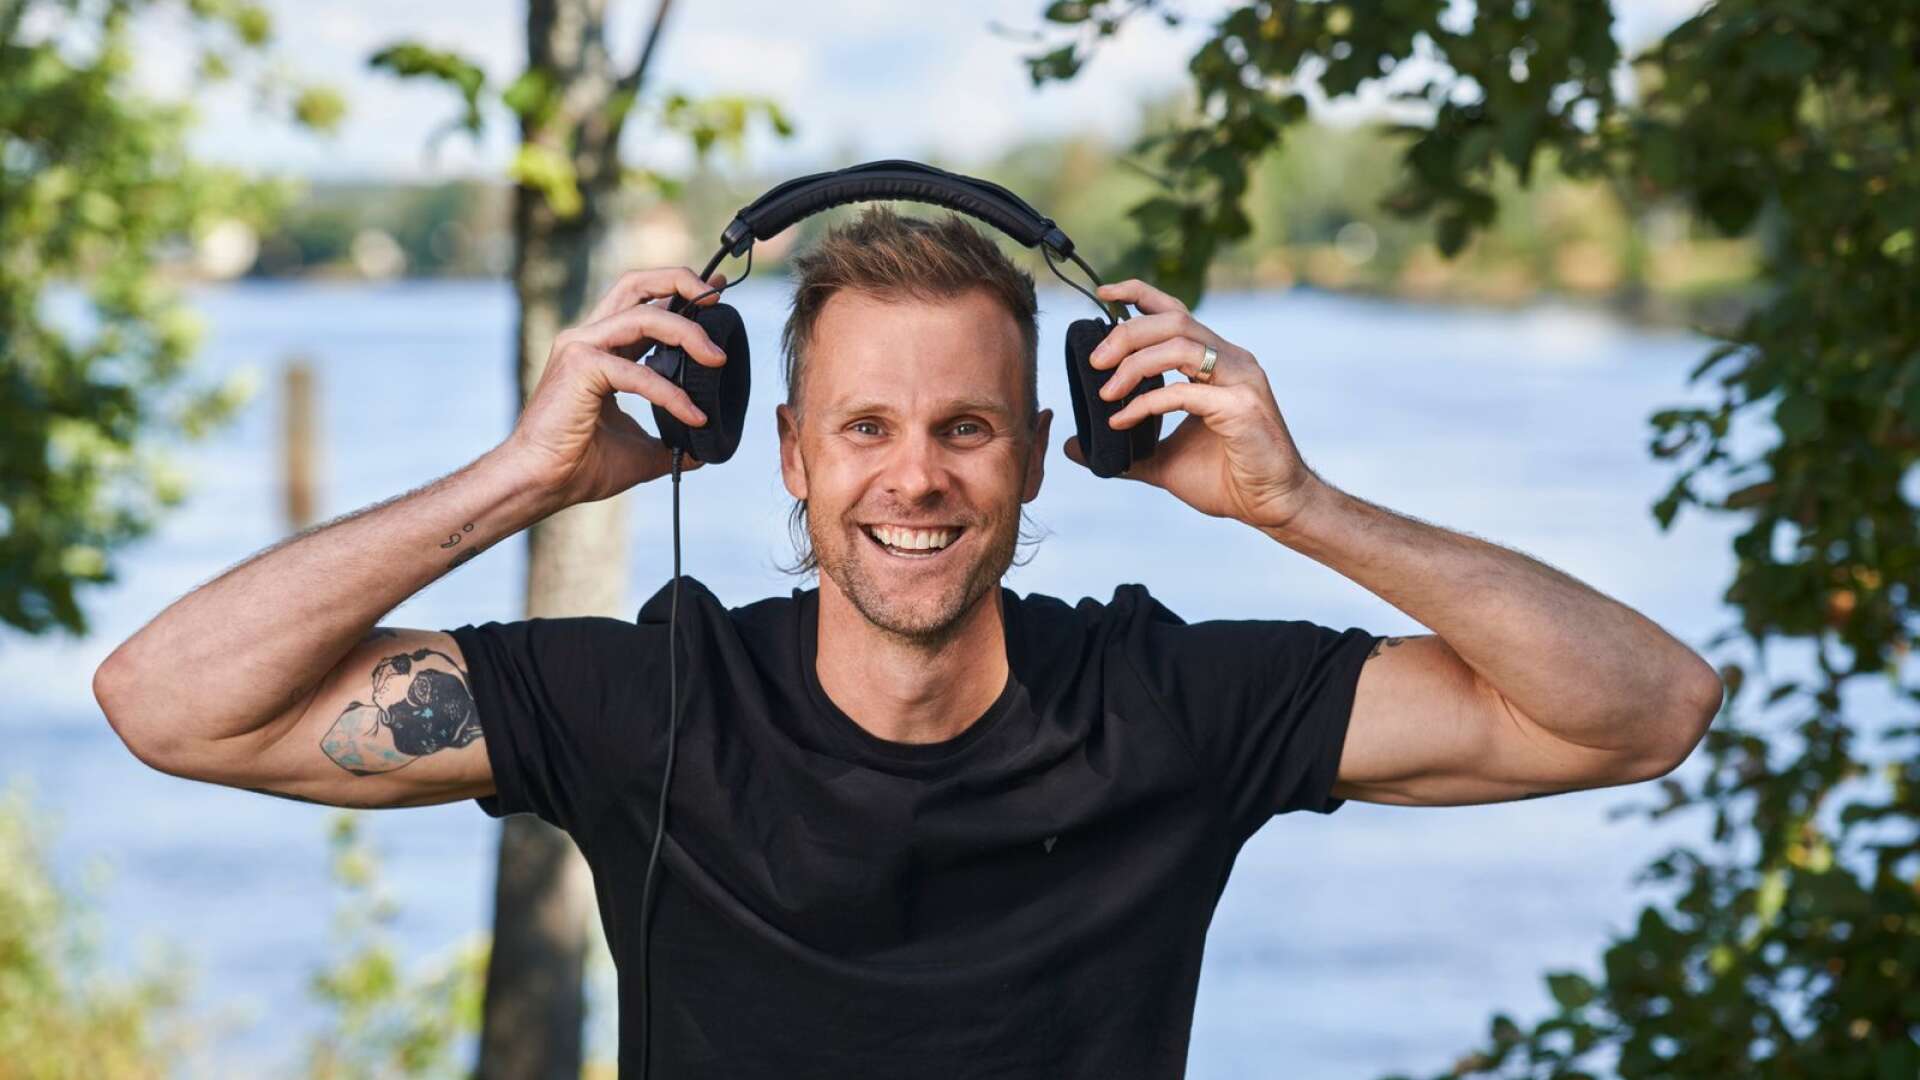 Jon Strand, 38, reser från Indiana i USA för att lära känna sin sina värmländska rötter. Första stoppet i årets säsong av ”Allt för Sverige” är i Karlstad.